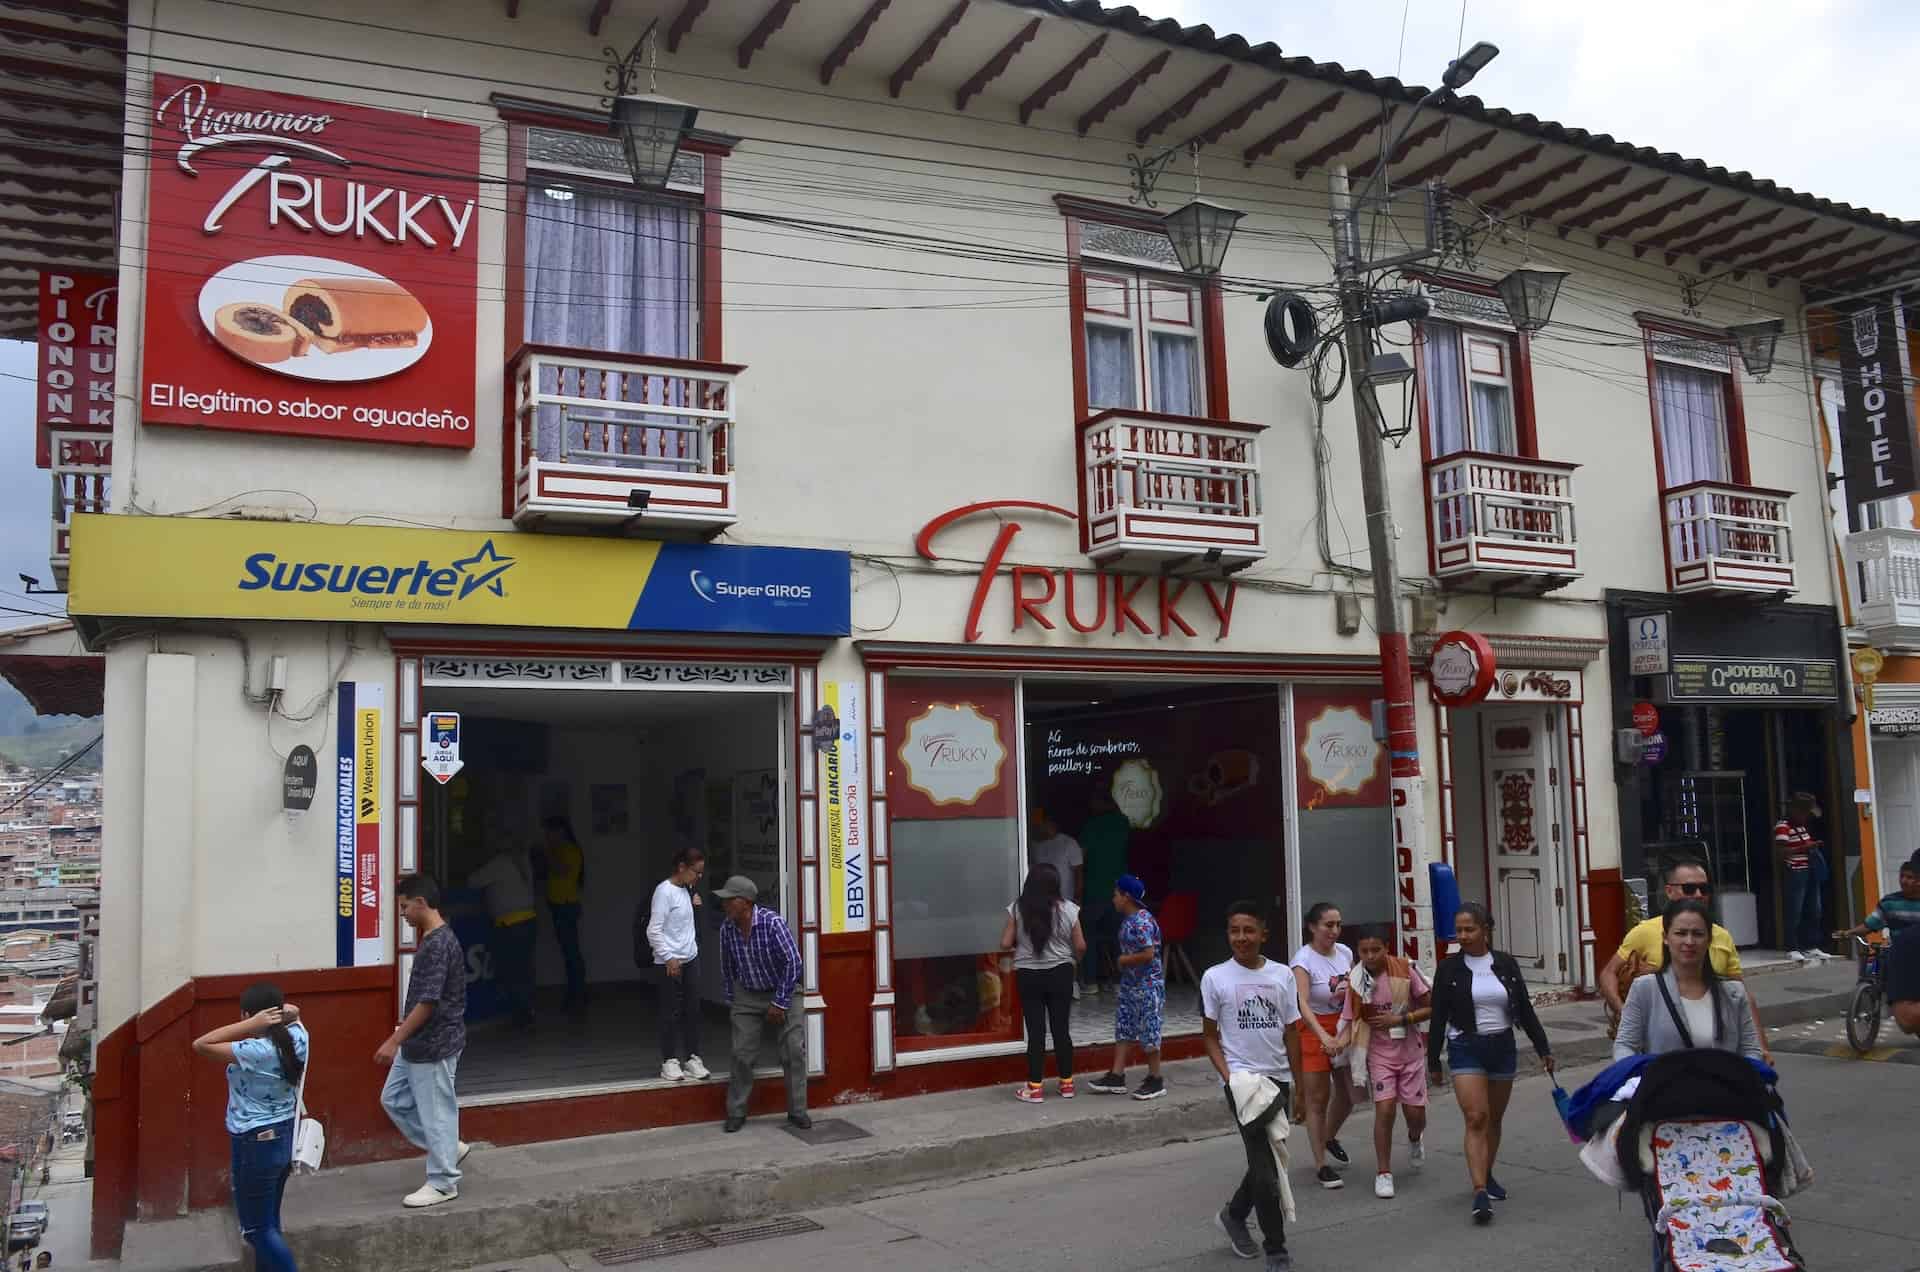 Piononos Trukky in Aguadas, Caldas, Colombia